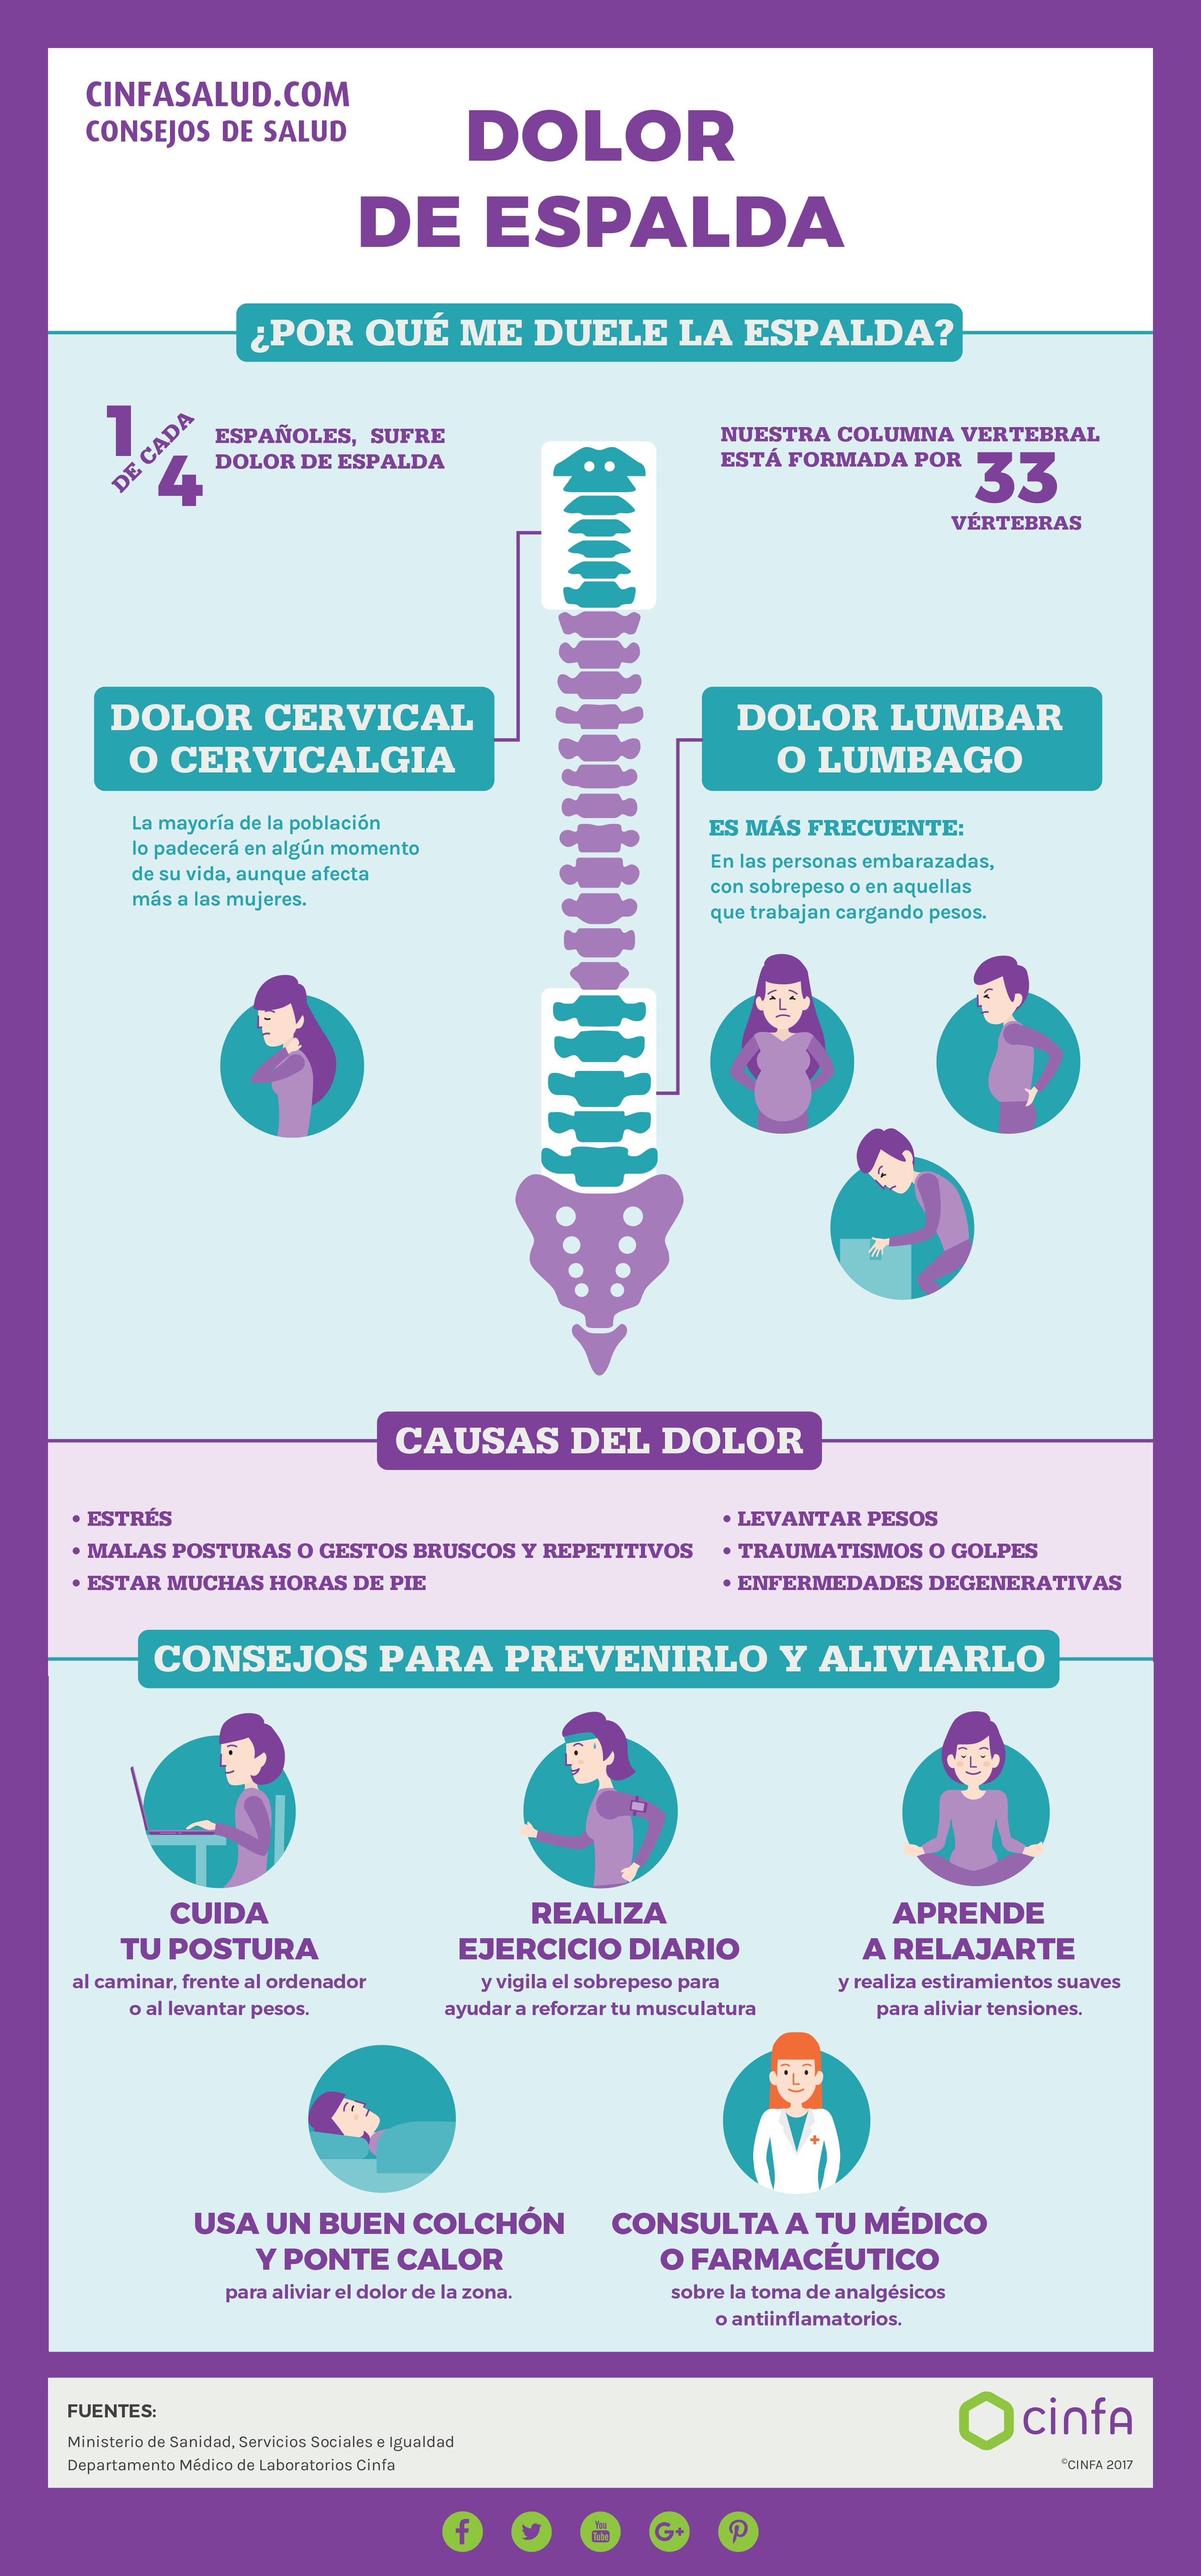 Dolor cervical: Causas, síntomas y tratamiento